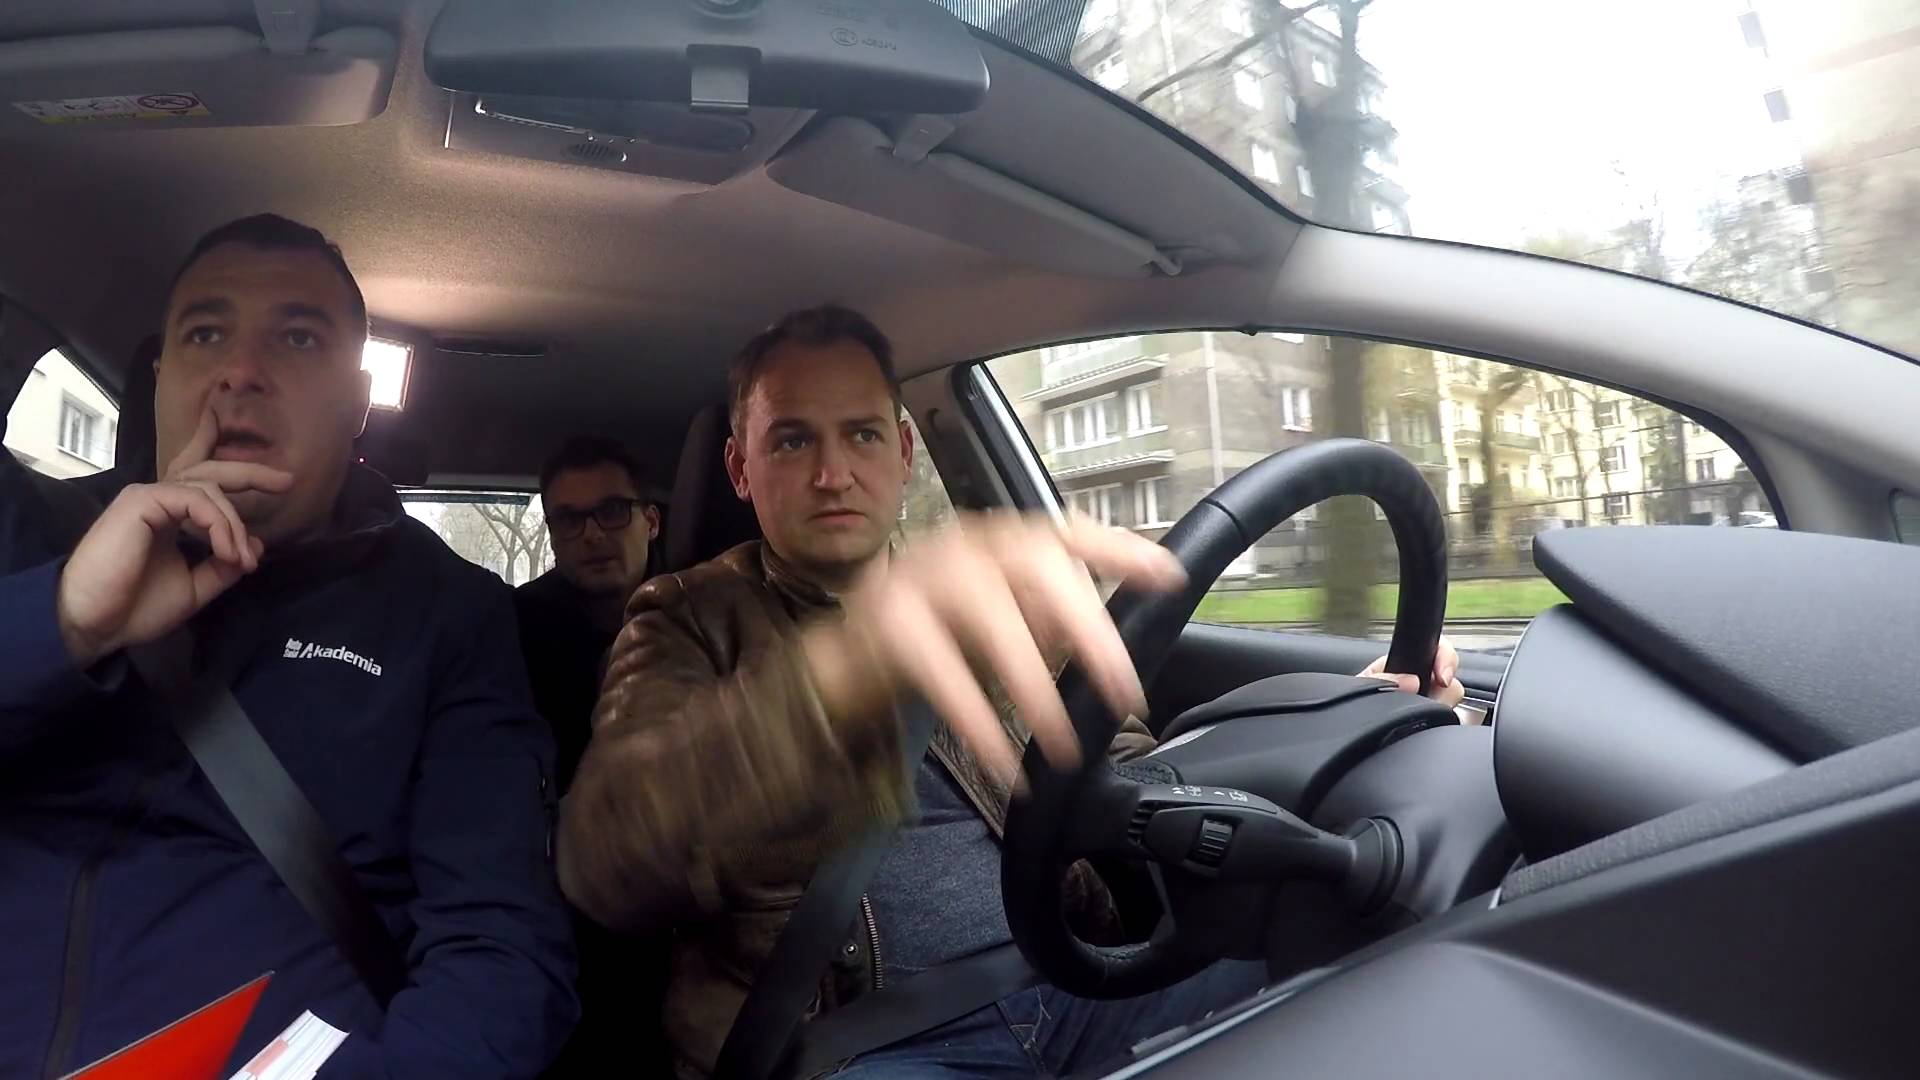 Stig z programu "Top Gear" próbuje zdać polski egzamin na prawo jazdy! Zobacz jak mu poszło! Motoryzacja   